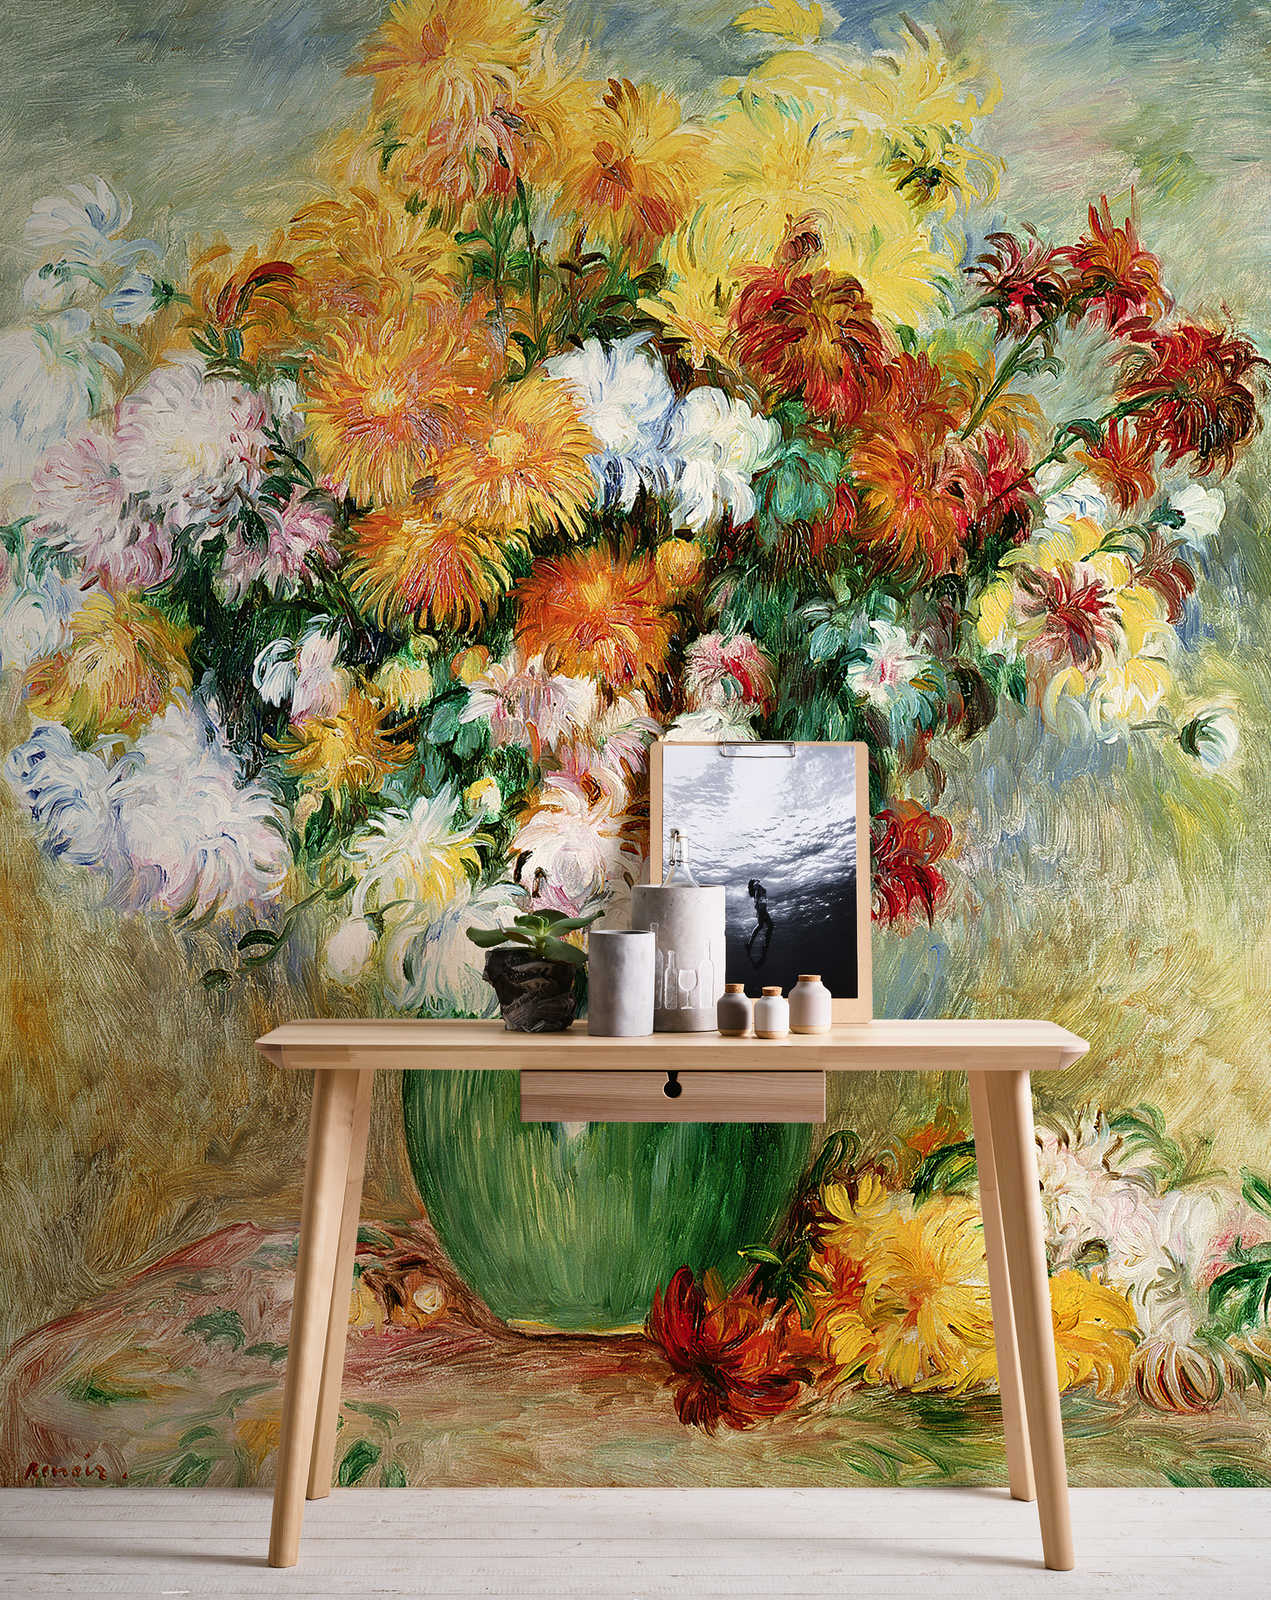             Papier peint "Bouquet de fleurs avec chrysanthème" de Pierre Auguste Renoir
        